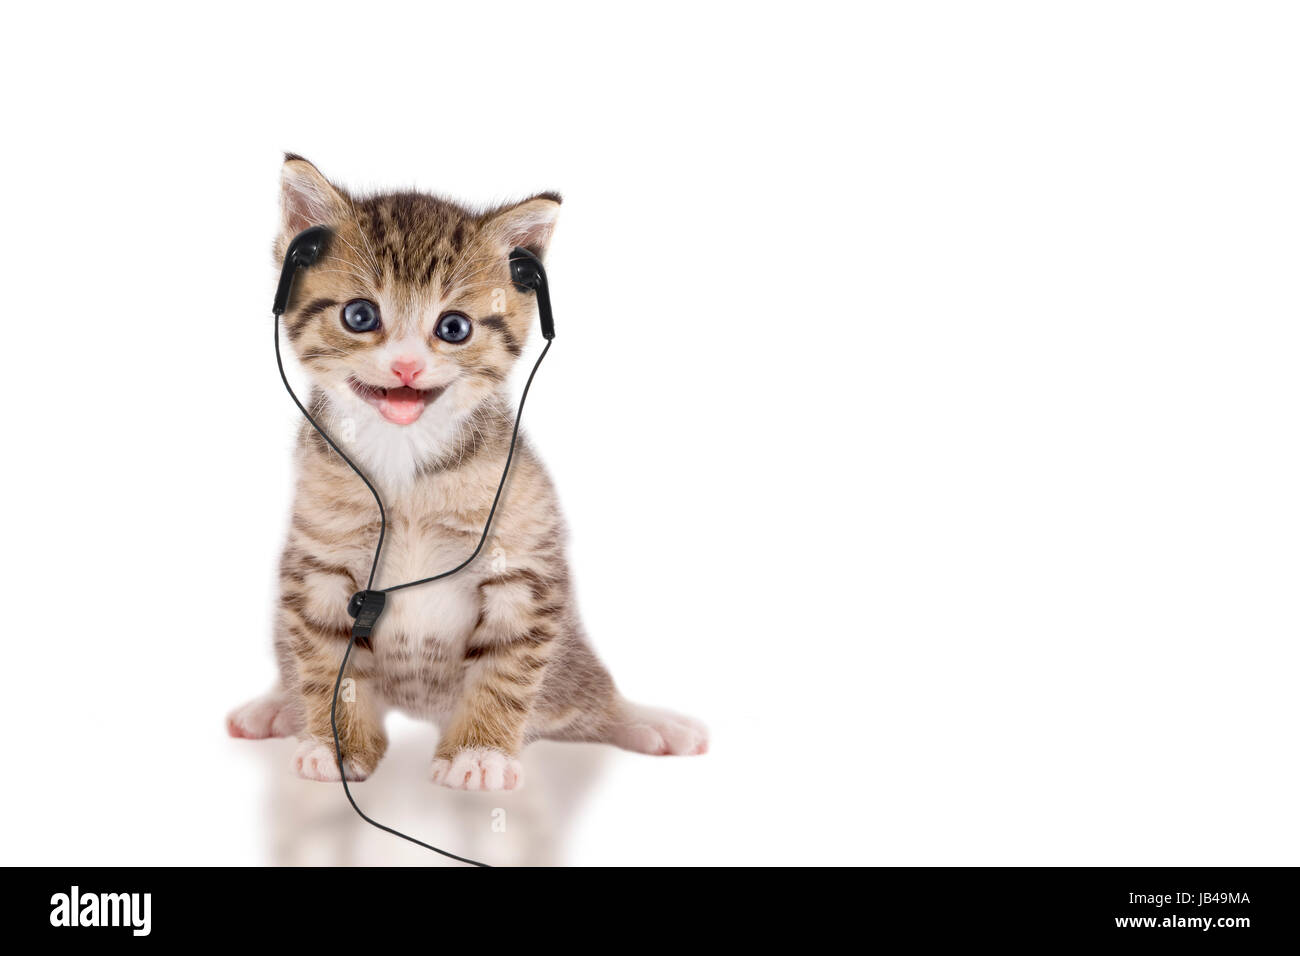 Junge Katze hört Musik über Kopfhörer / Headset auf weißem Hintergrund Stock Photo